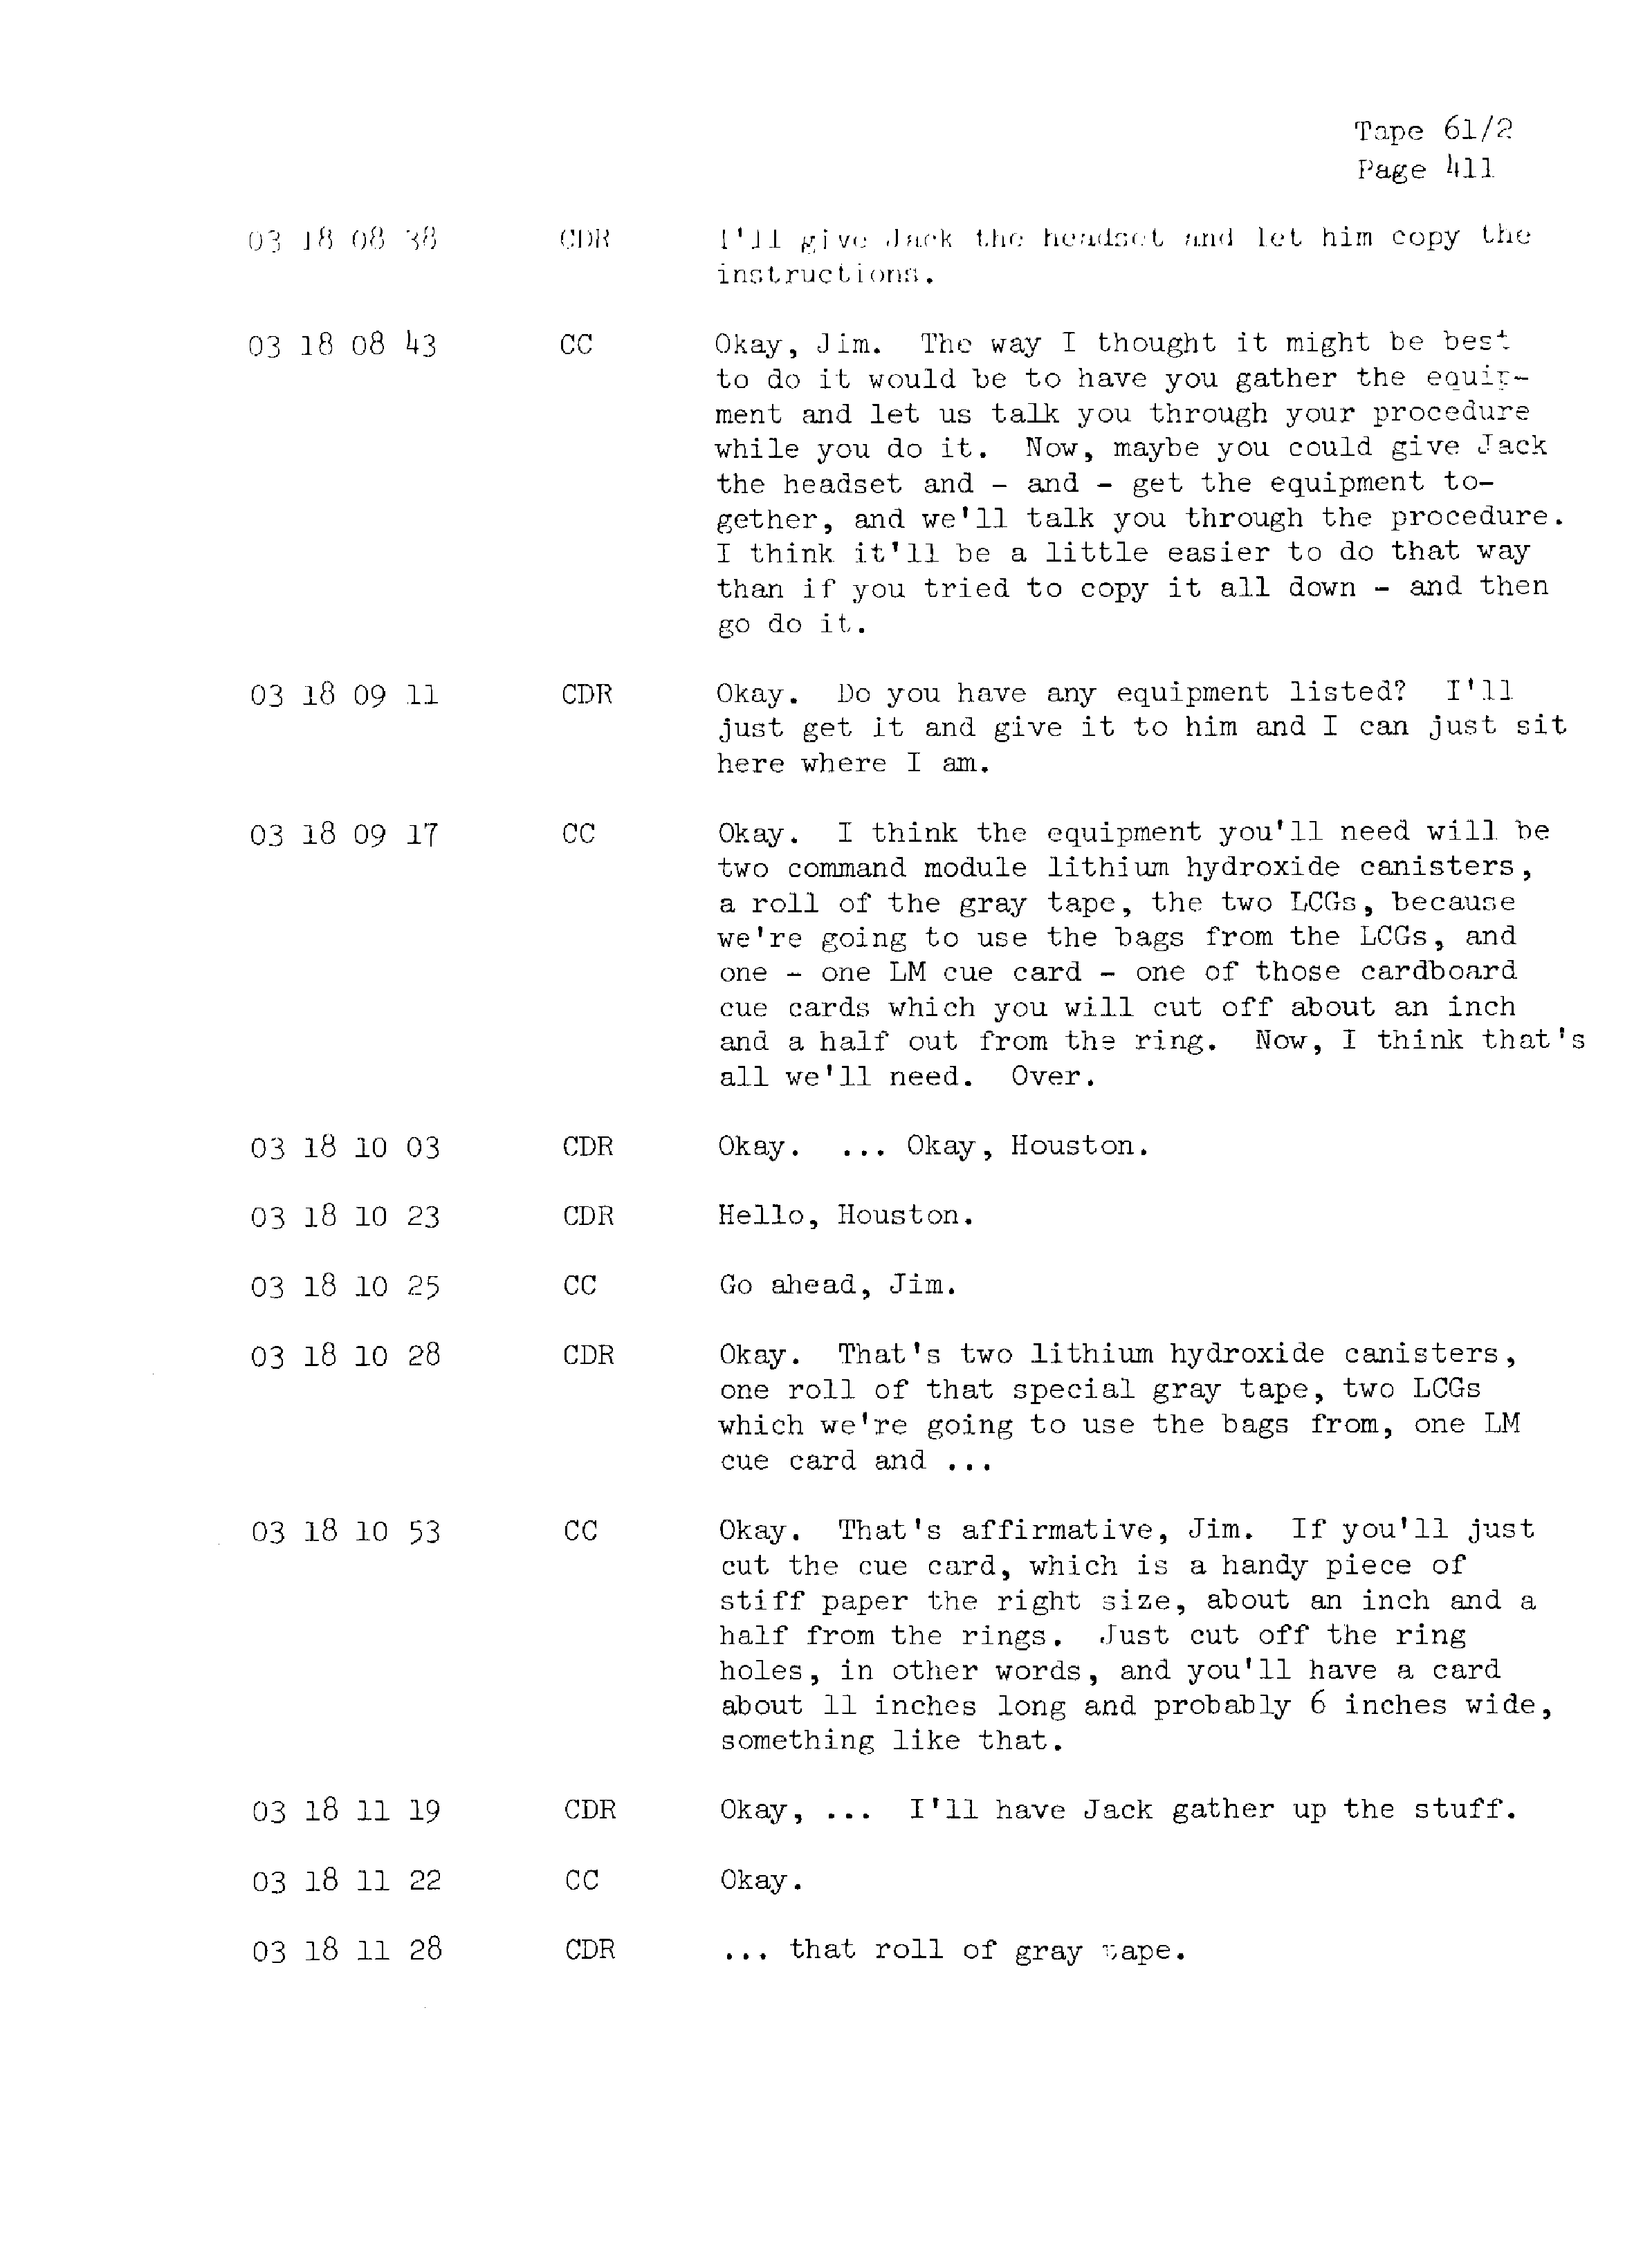 Page 418 of Apollo 13’s original transcript